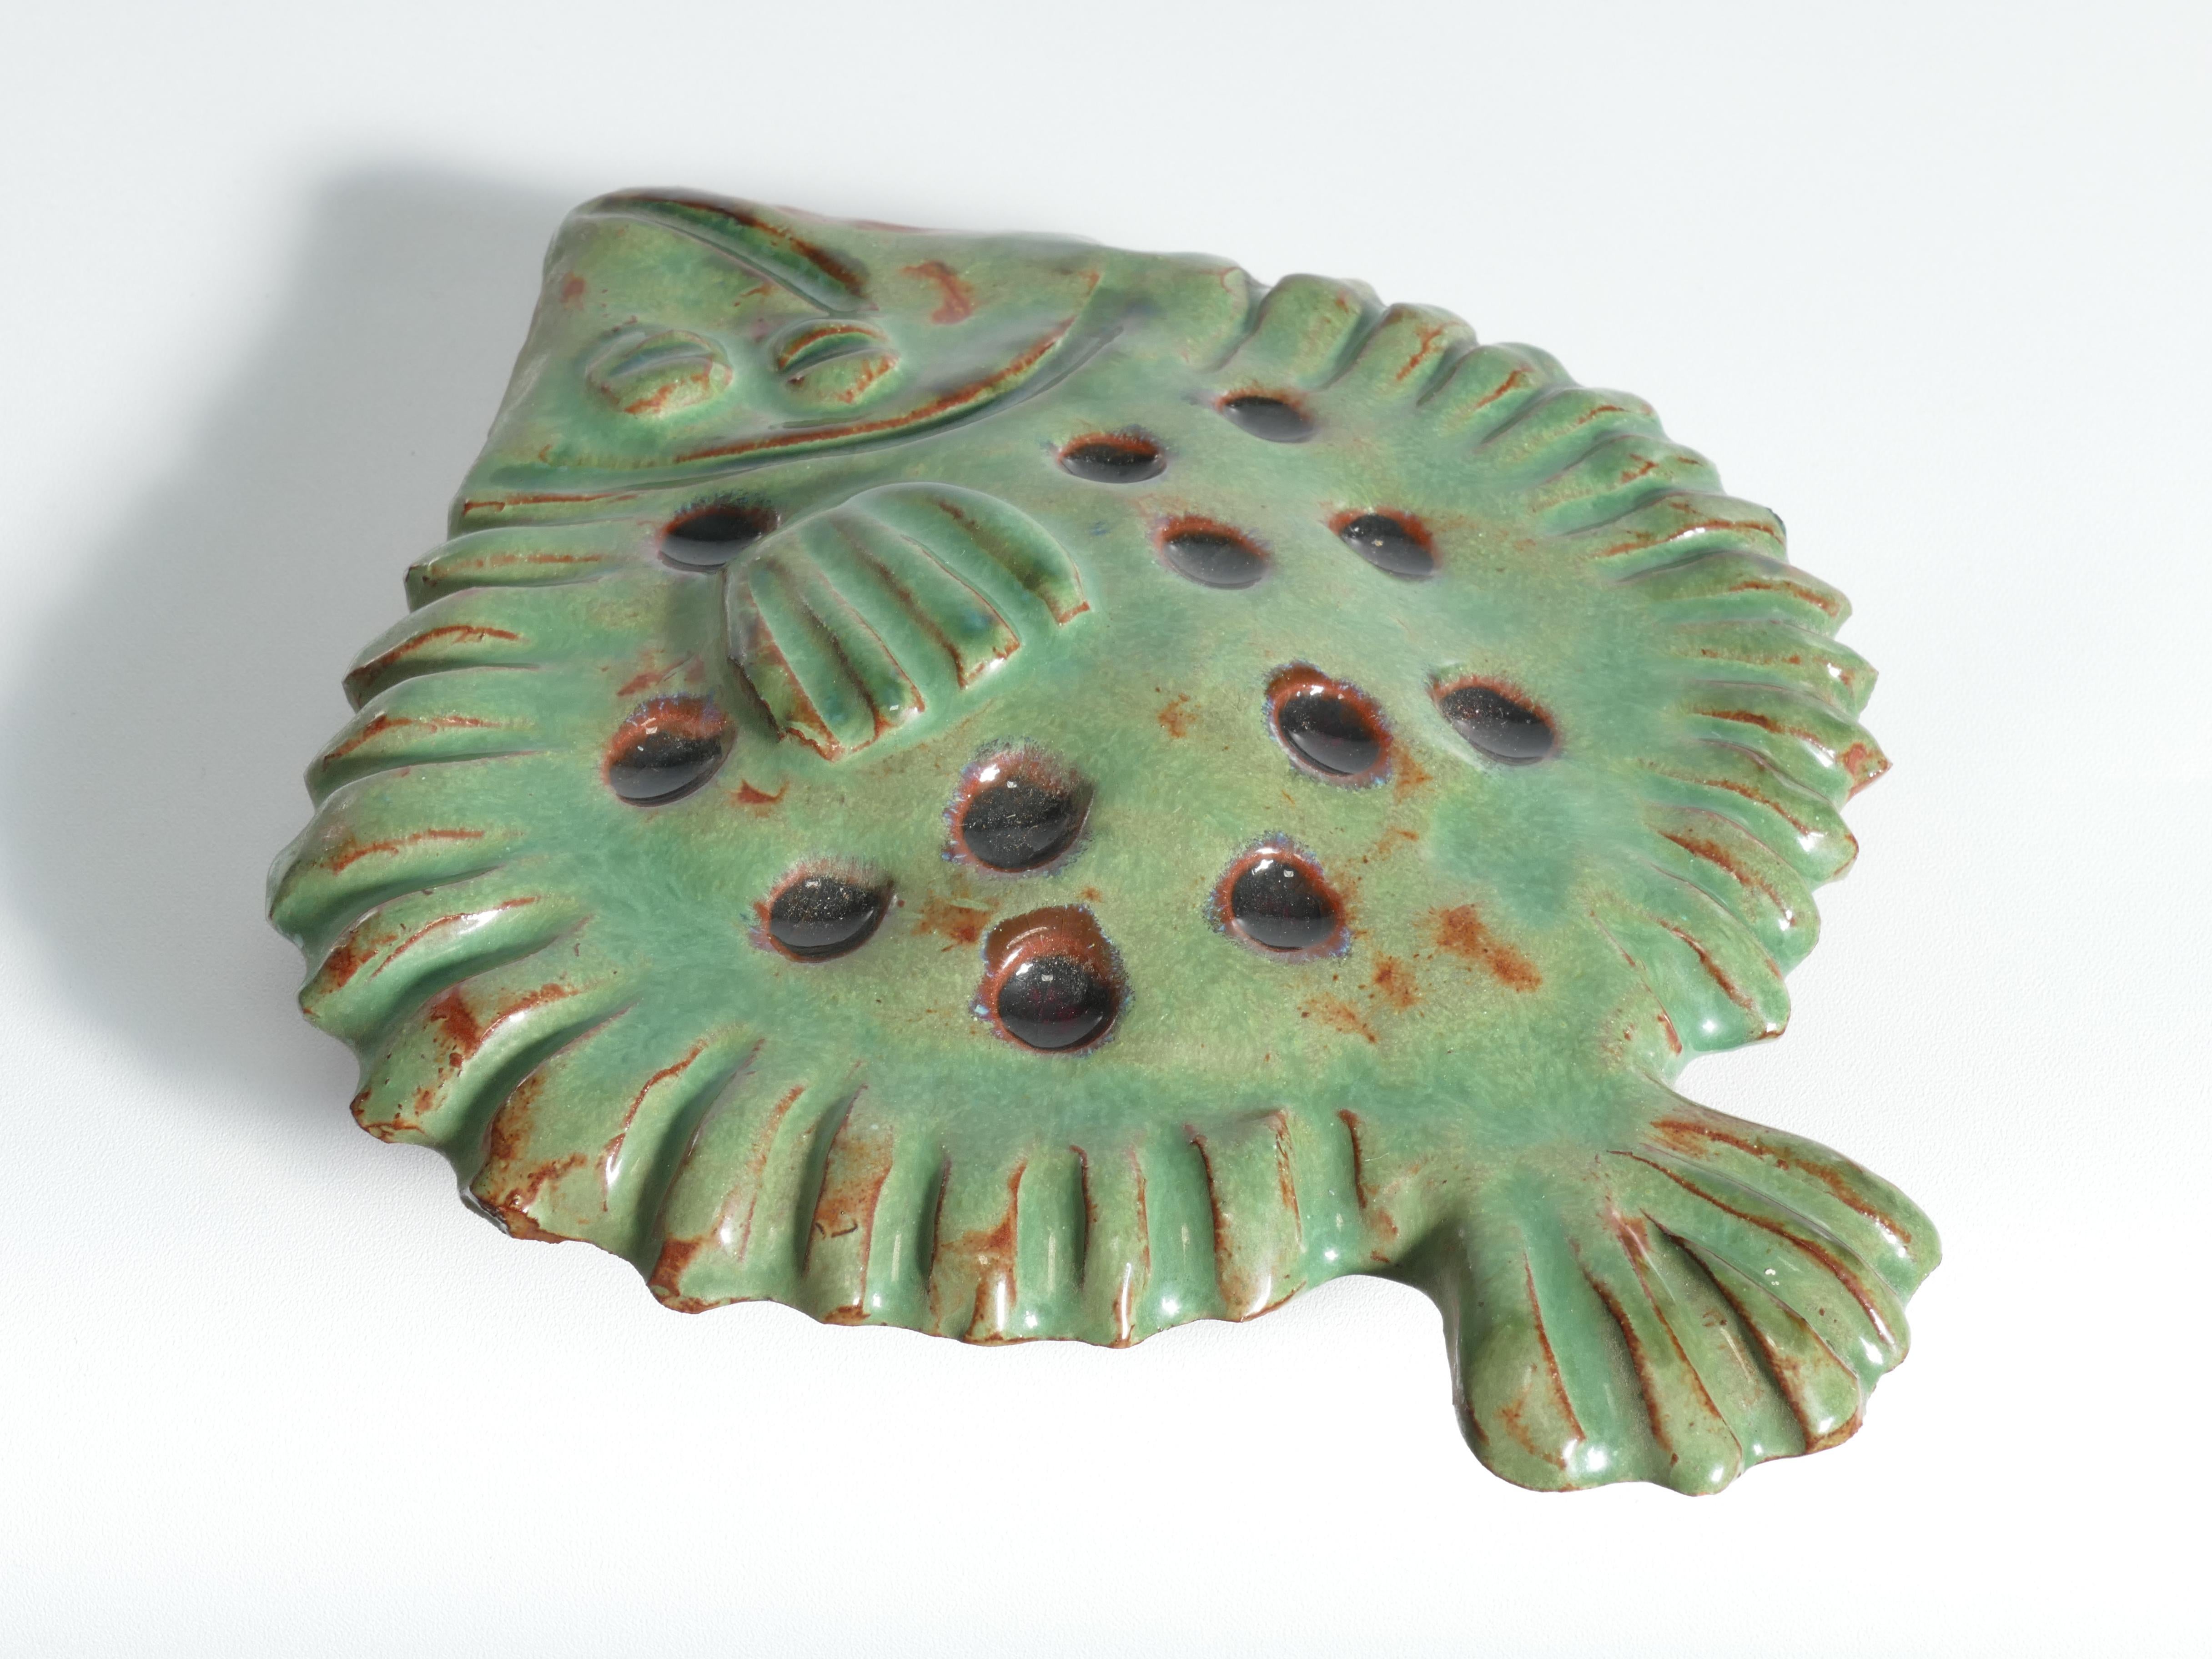 Vintage Green Ceramic Flounder Fish by Allan Hellman, Sweden 1981 For Sale 6